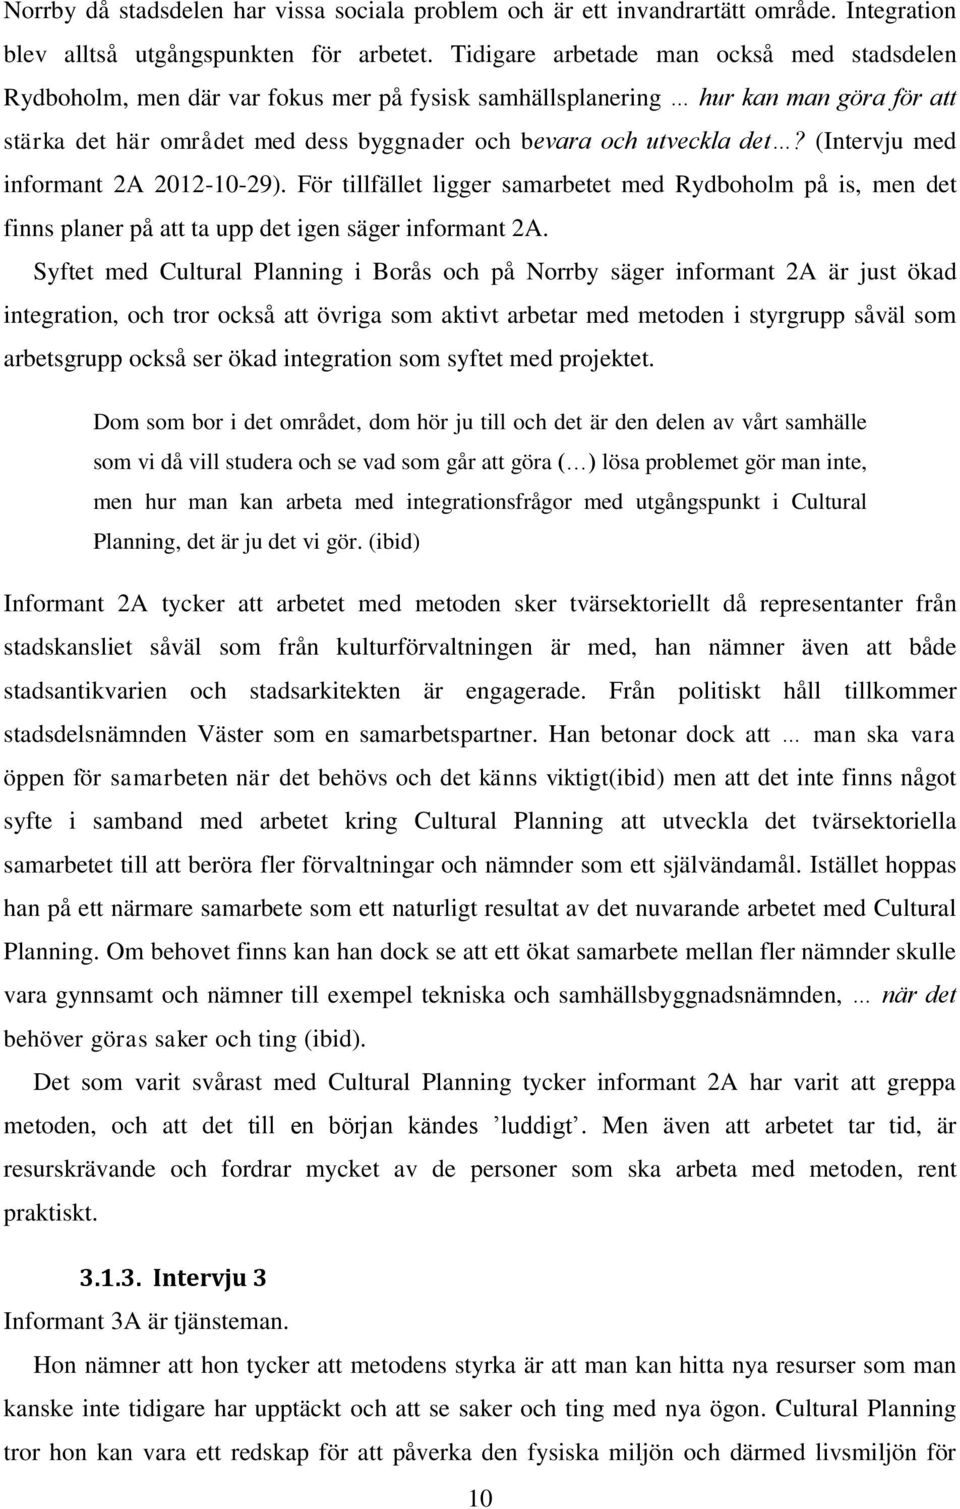 (Intervju med informant 2A 2012-10-29). För tillfället ligger samarbetet med Rydboholm på is, men det finns planer på att ta upp det igen säger informant 2A.